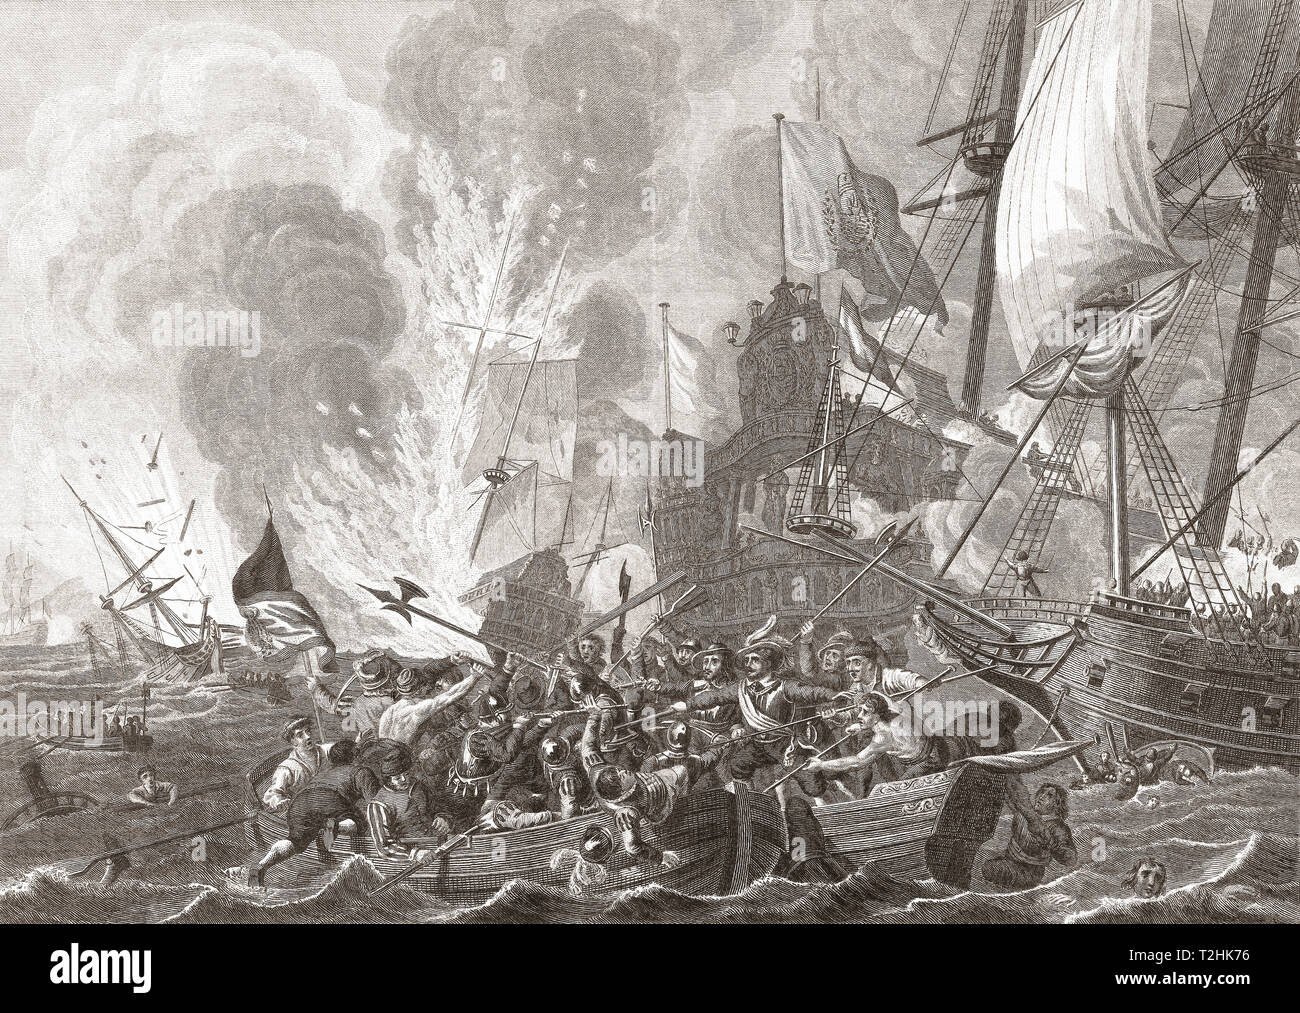 La bataille navale de Gibraltar, 25 avril 1607, durant la Guerre de Quatre-Vingts Ans. Une flotte hollandaise surpris et engagé une flotte espagnole ancrée dans la baie de Gibraltar au cours de laquelle la plupart de ses navires ont été détruits. Banque D'Images